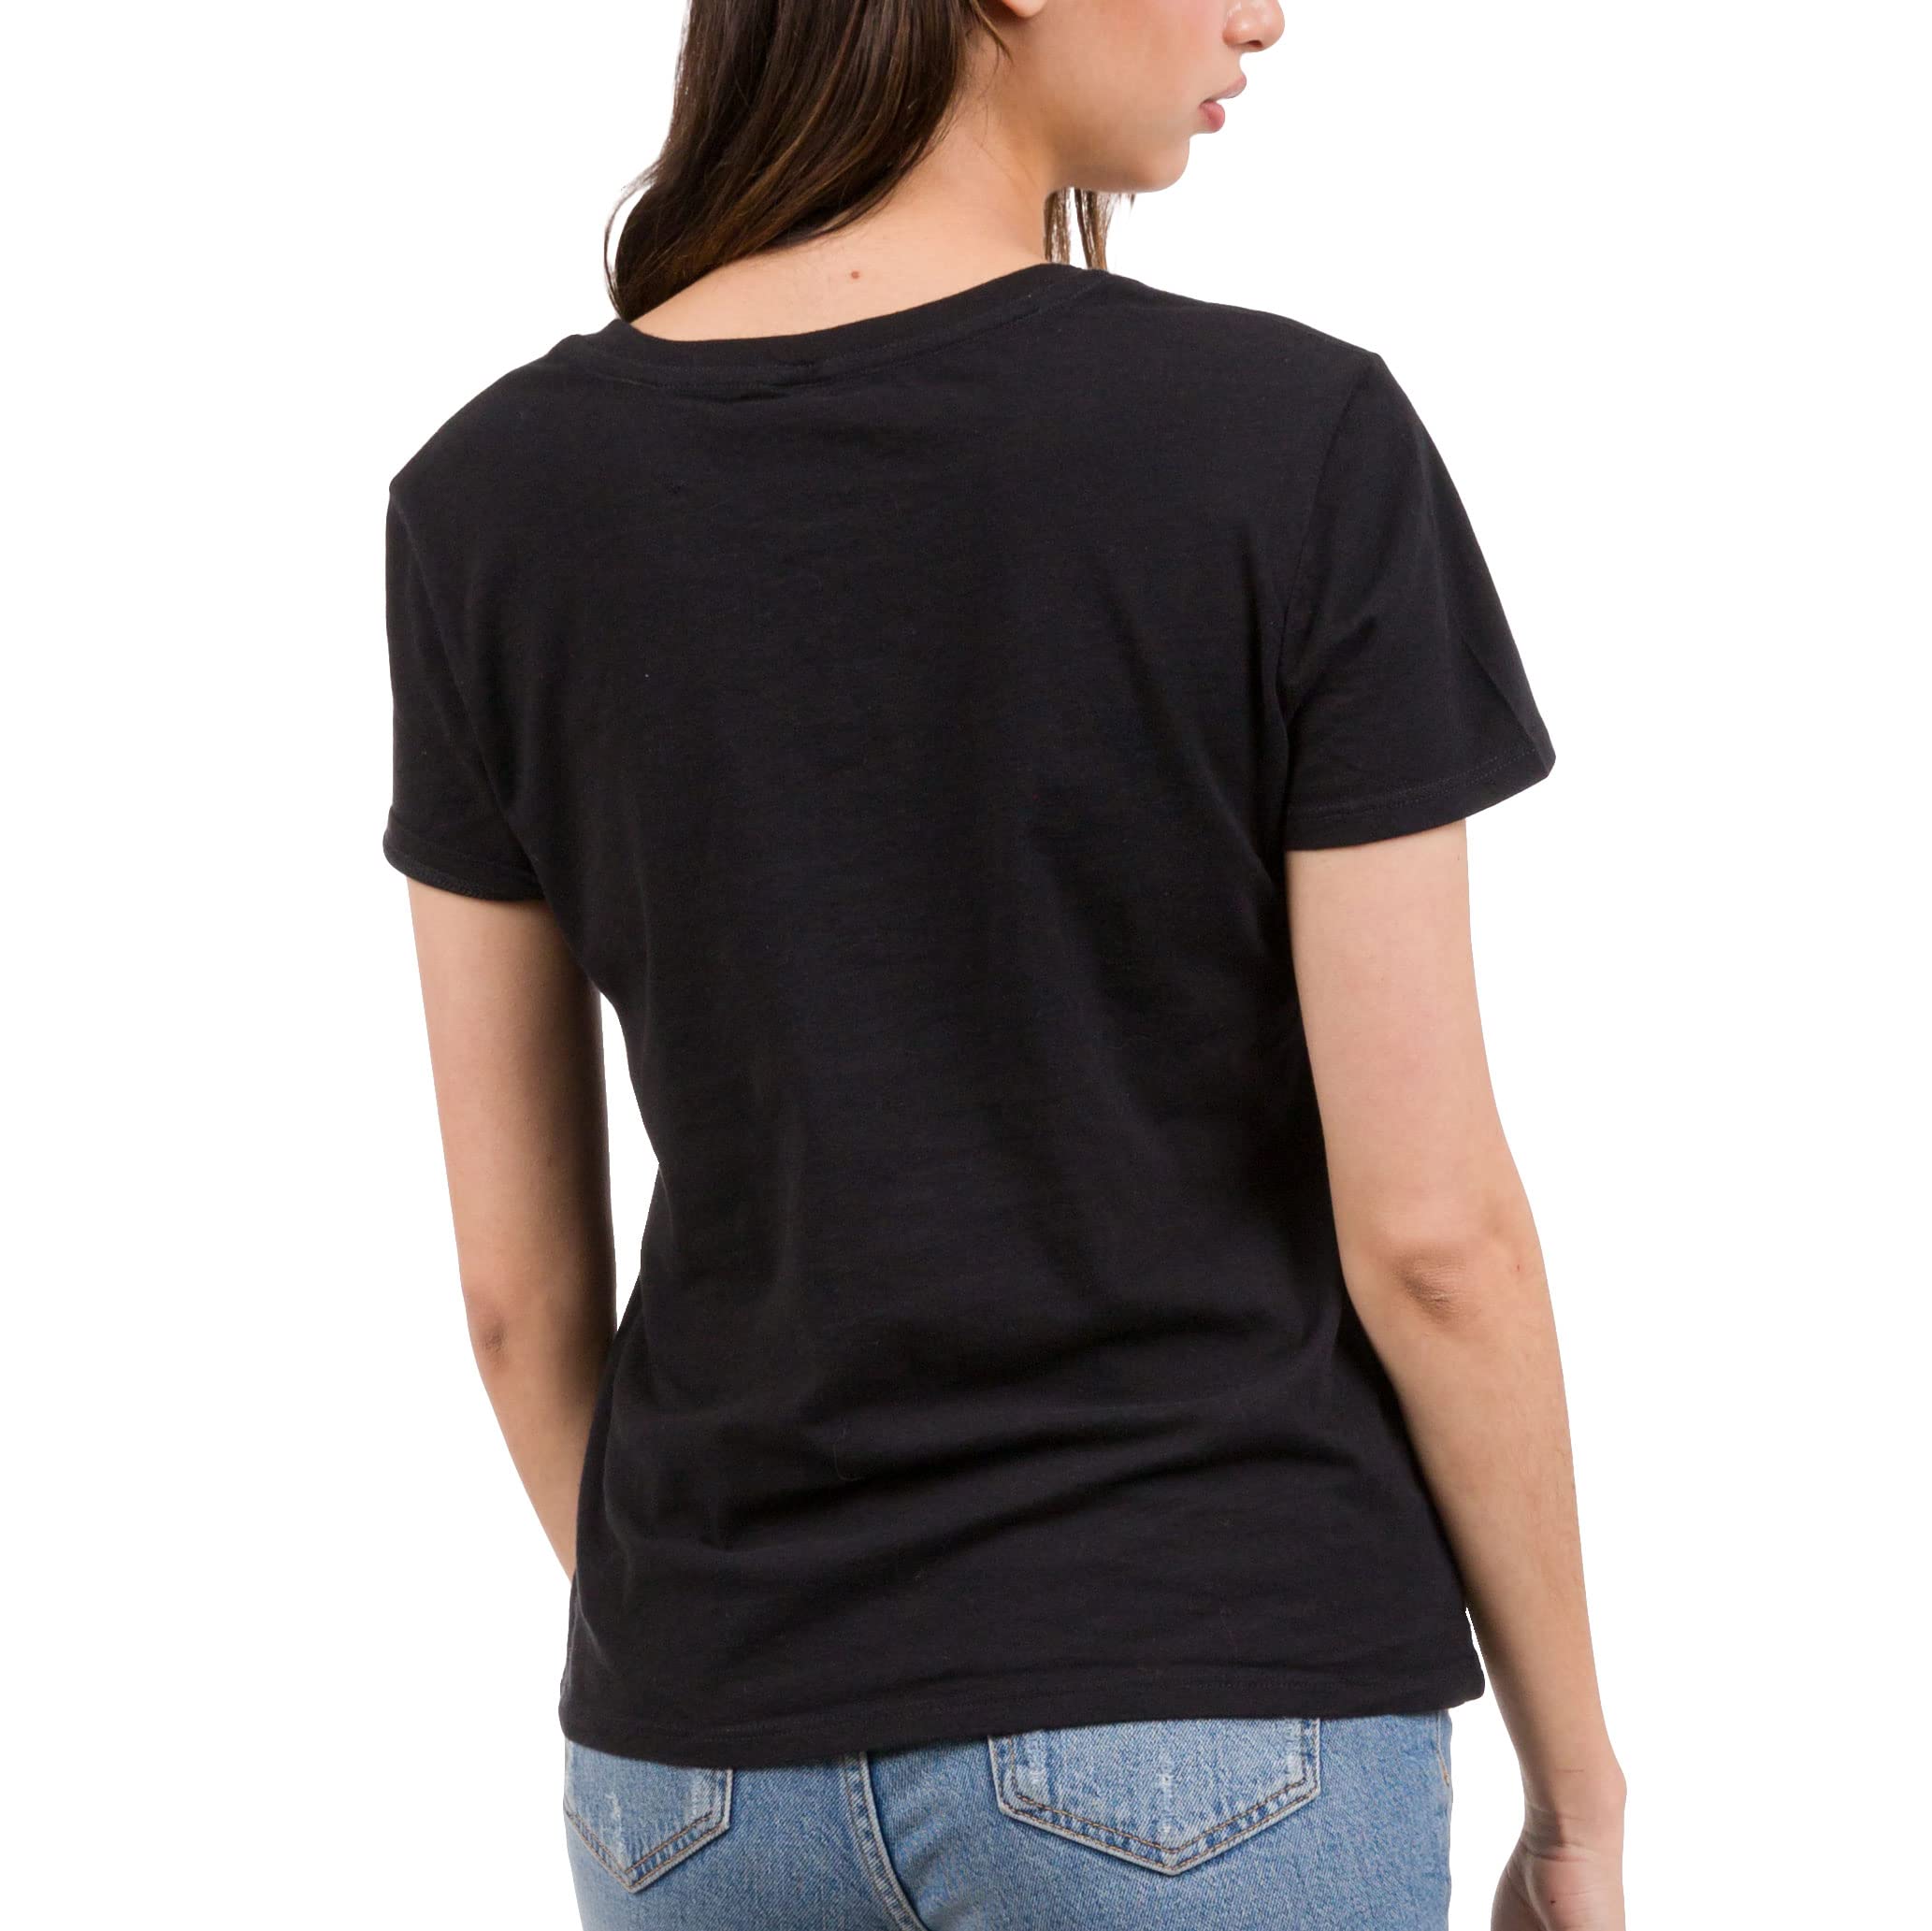 Junk Food Clothing x NFL - New York Giants - Fan Favorite - Women's Short Sleeve Fan T-Shirt - Size X-Large